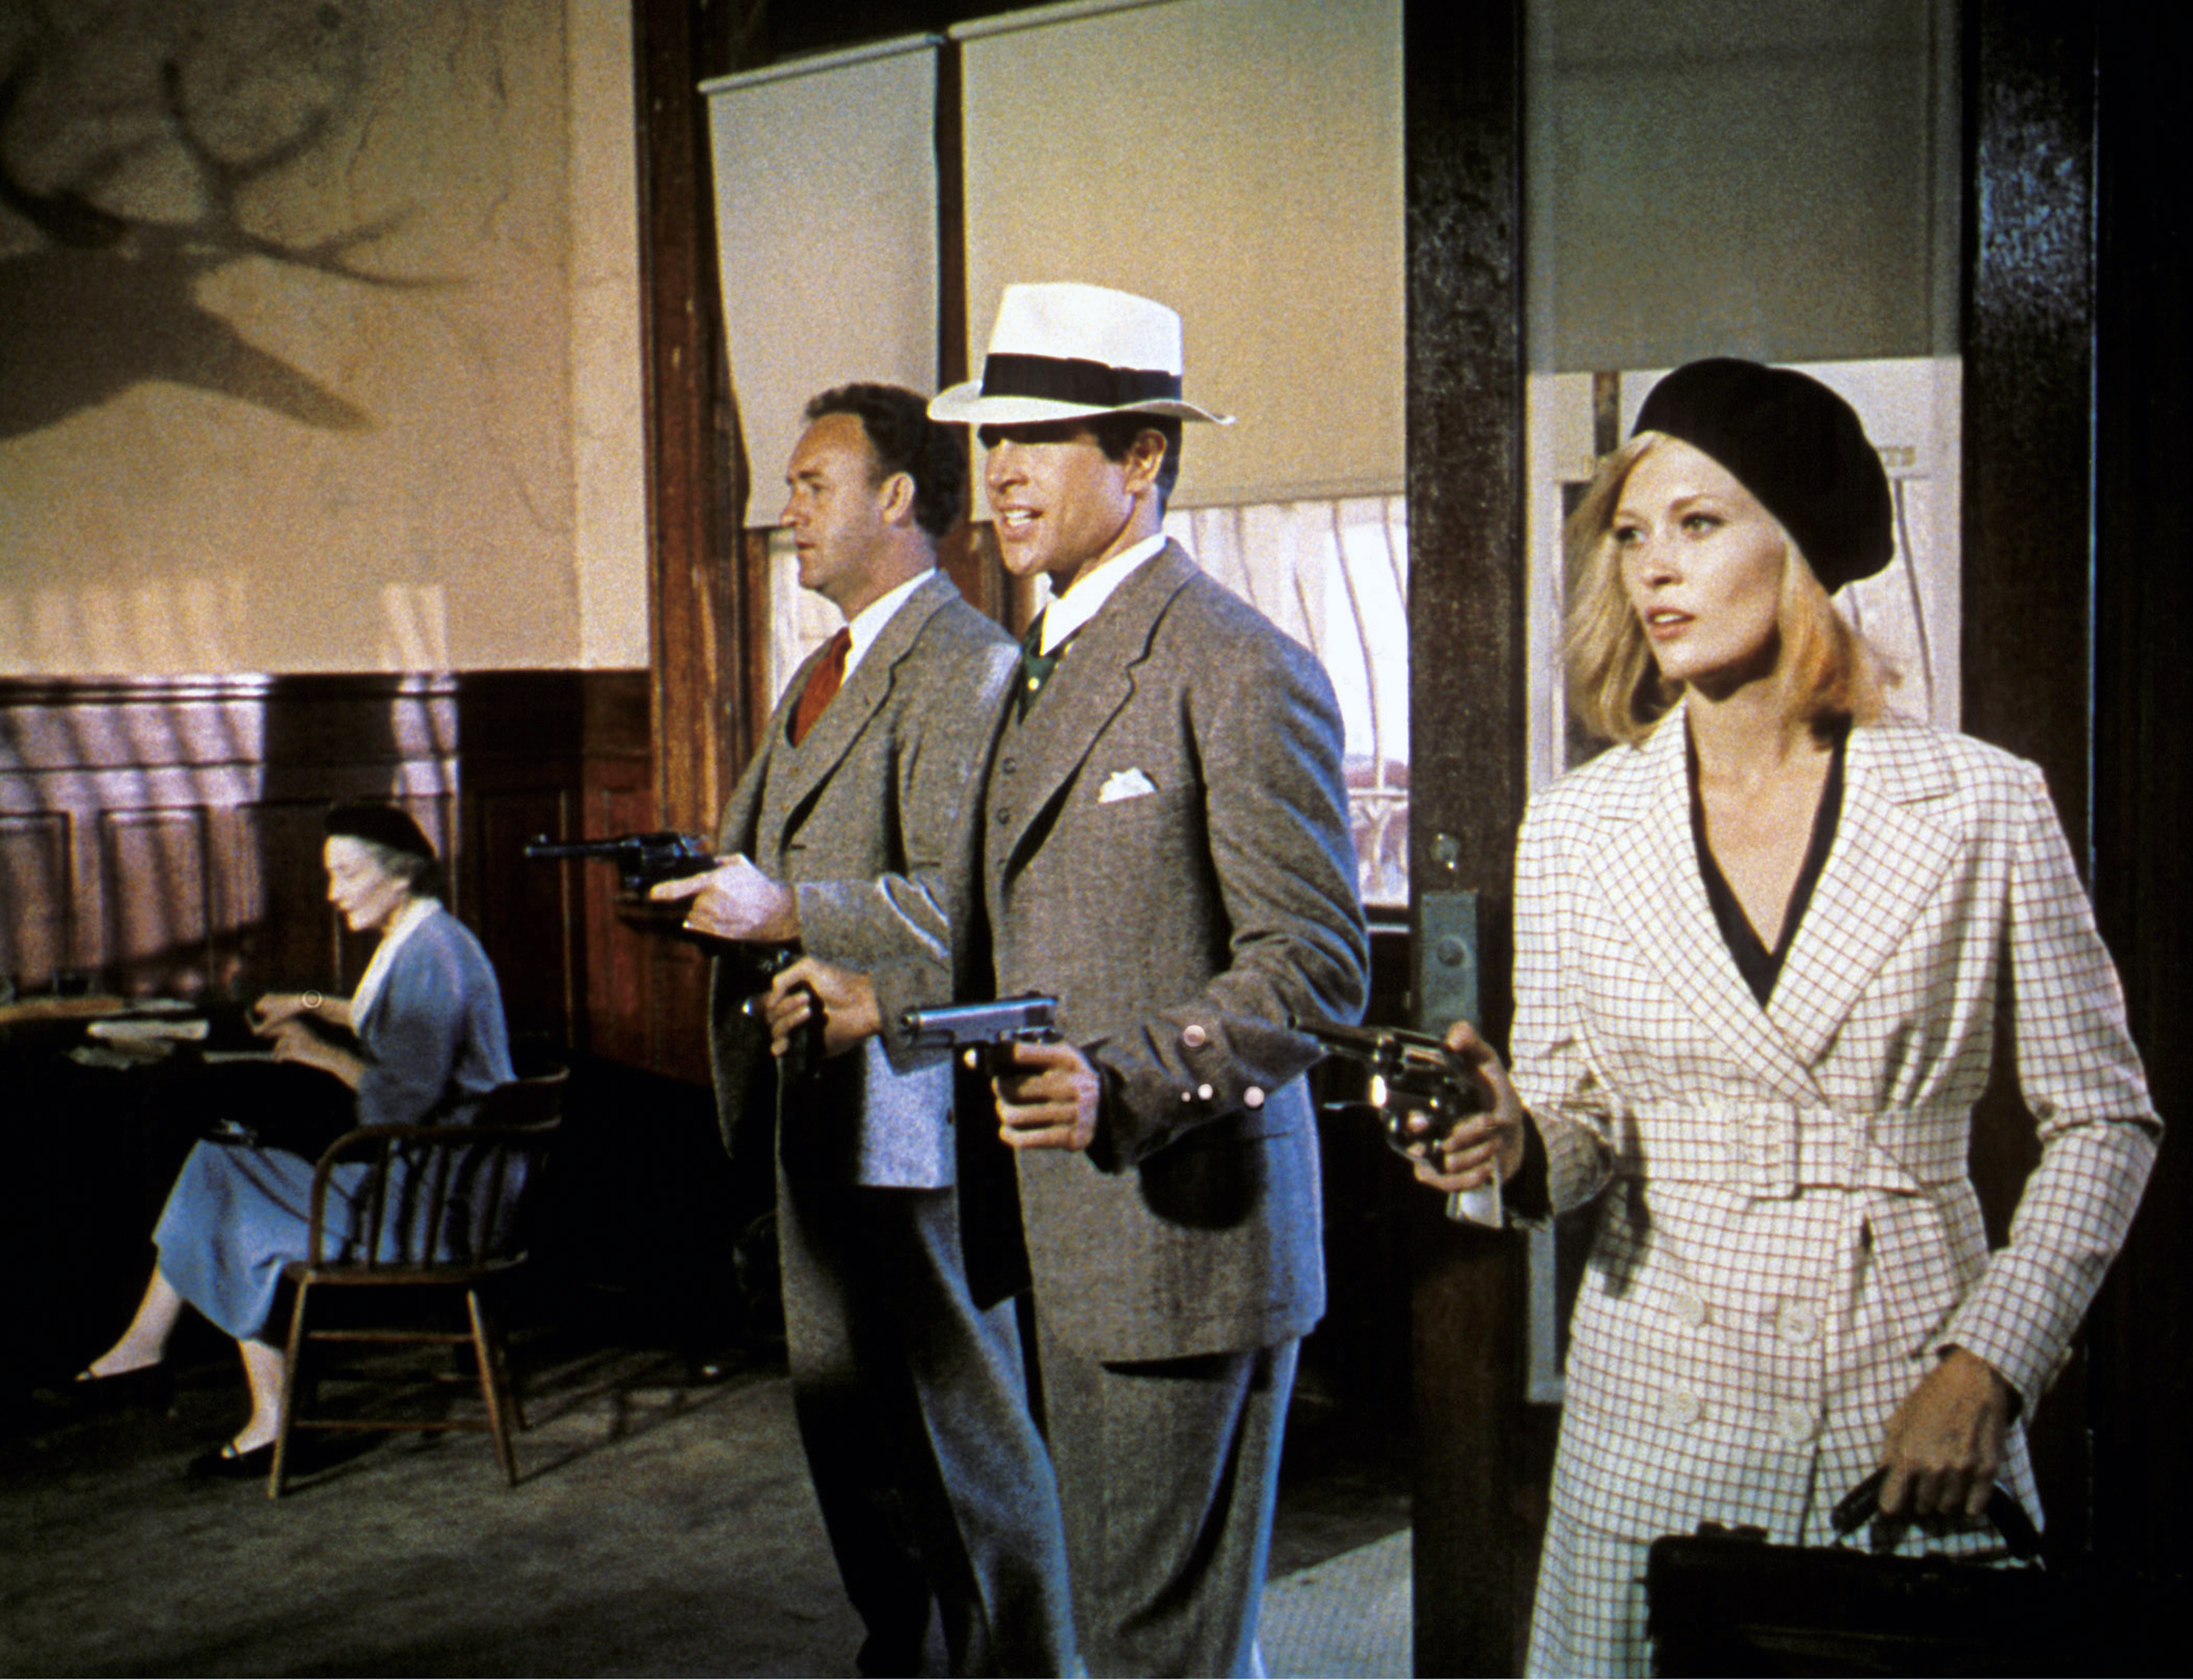 Die amerikanischen Schauspieler Gene Hackman, Warren Beatty und Faye Dunaway am Set von "Bonnie und Clyde" | Quelle: Getty Images